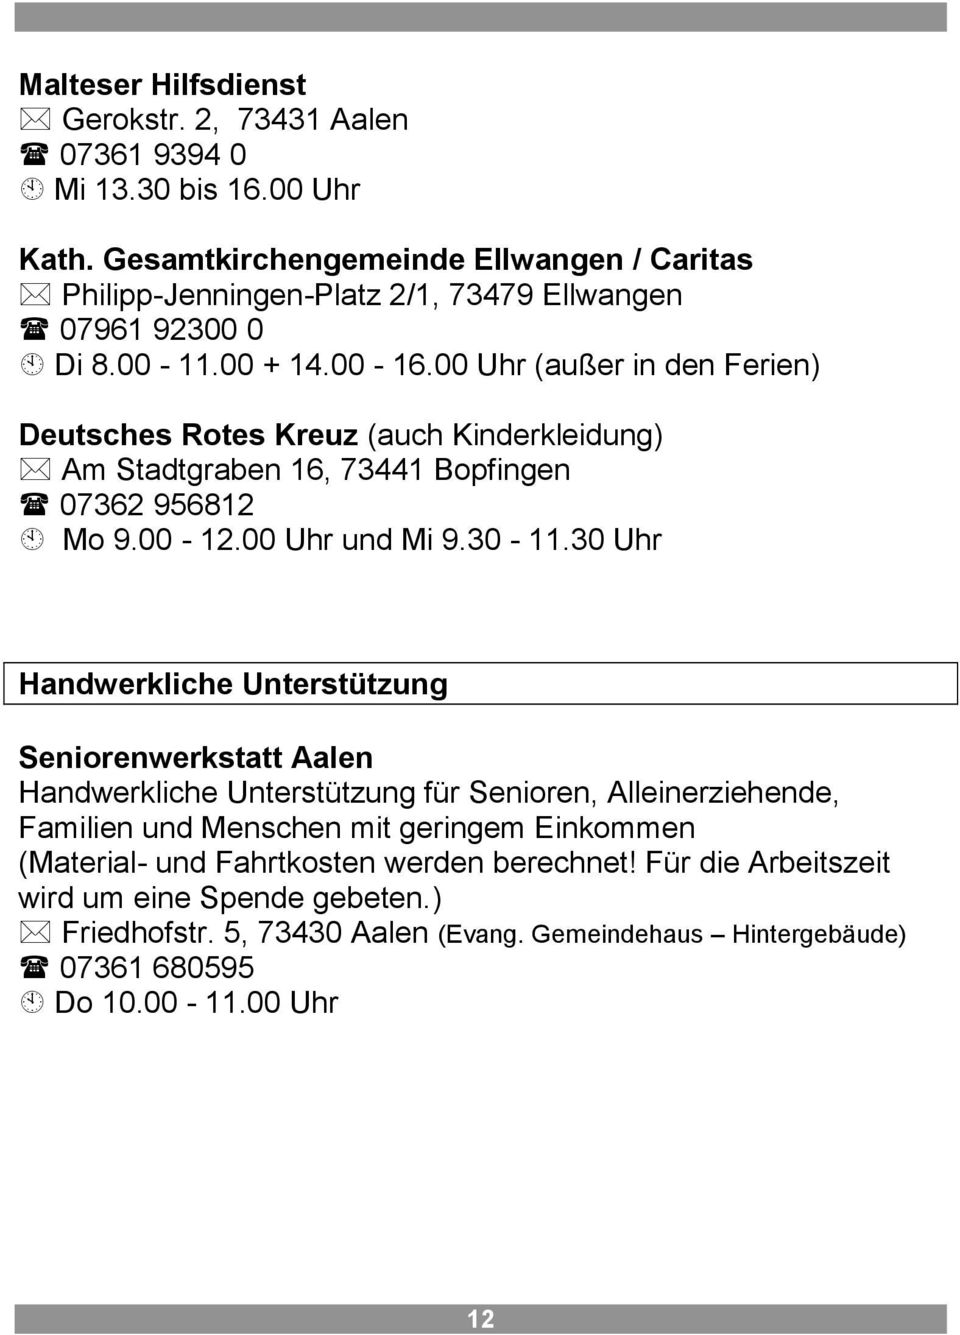 00 Uhr (außer in den Ferien) Deutsches Rotes Kreuz (auch Kinderkleidung) Am Stadtgraben 16, 73441 Bopfingen 07362 956812 Mo 9.00-12.00 Uhr und Mi 9.30-11.